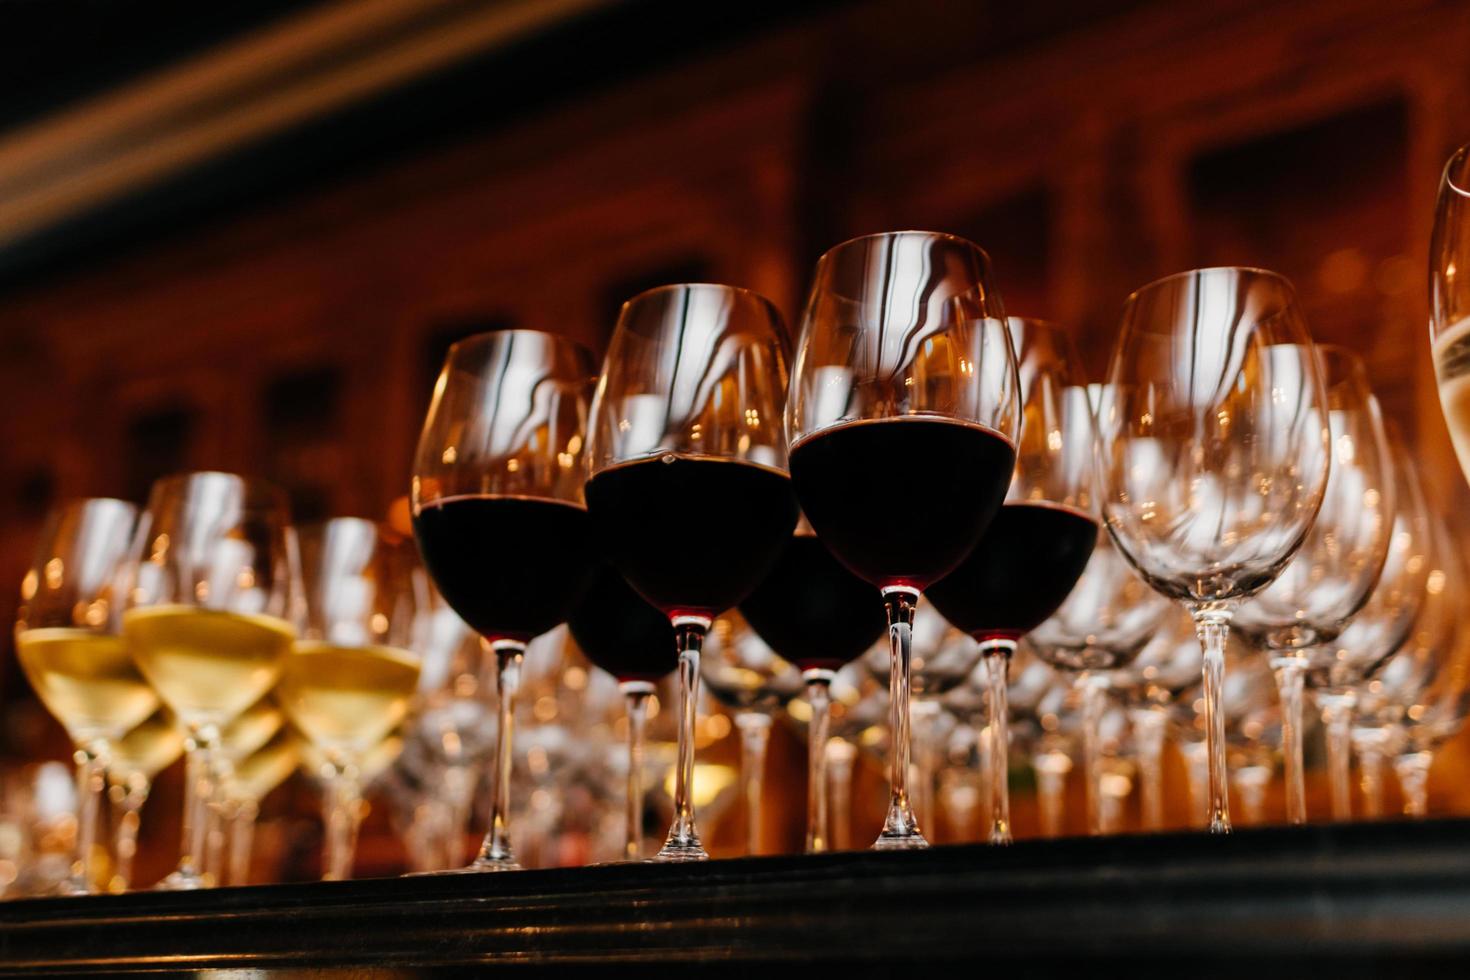 Viele Gläser gefüllt mit Weiß- und Rotwein auf dem Tisch. dunkle Farben. Weinsammlung. horizontaler Schuss. Getränk in Weingläsern foto